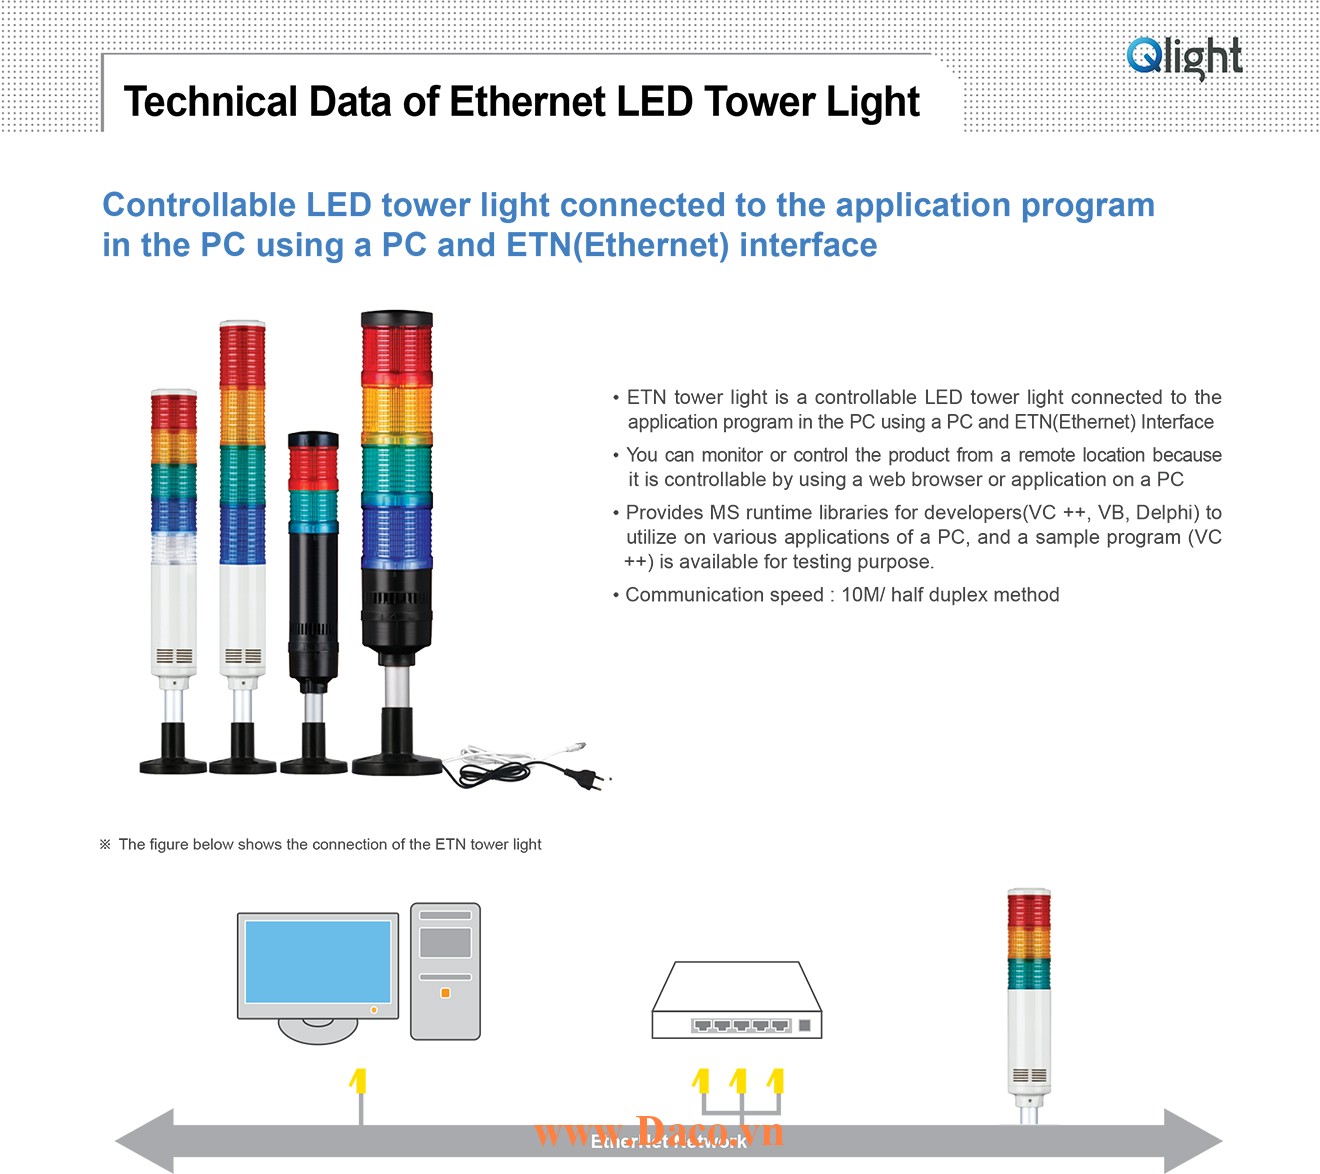 QT50L-ETN-BZ-1-24-R Đèn tầng Ethernet Qlight Φ50 Bóng LED 1 tầng Còi 5 âm Buzzer 90dB IP54